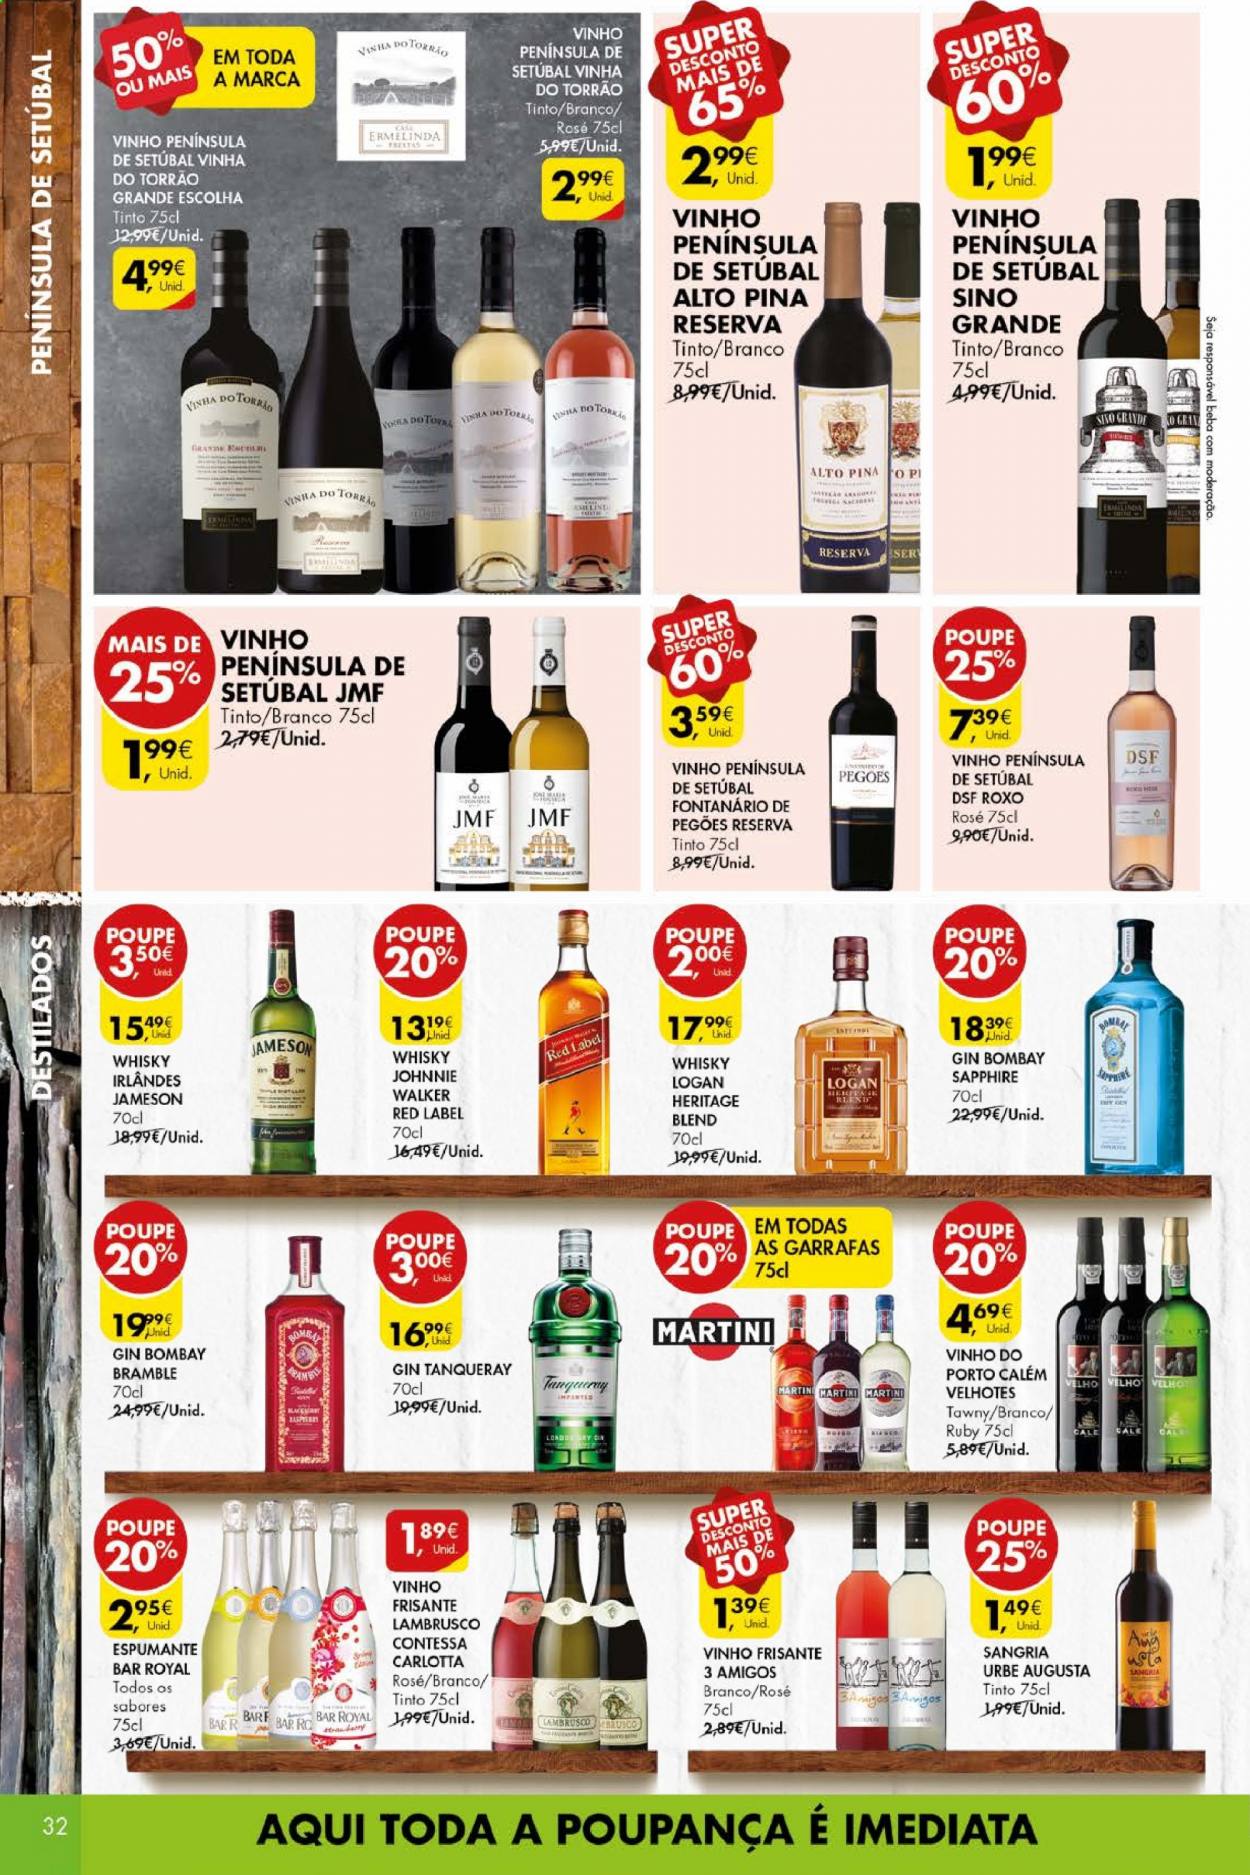 thumbnail - Folheto Pingo Doce - 20.4.2021 - 26.4.2021 - Produtos em promoção - espumante, vinho frisante, lambrusco, gin, Jameson, whiskey, Martini. Página 32.